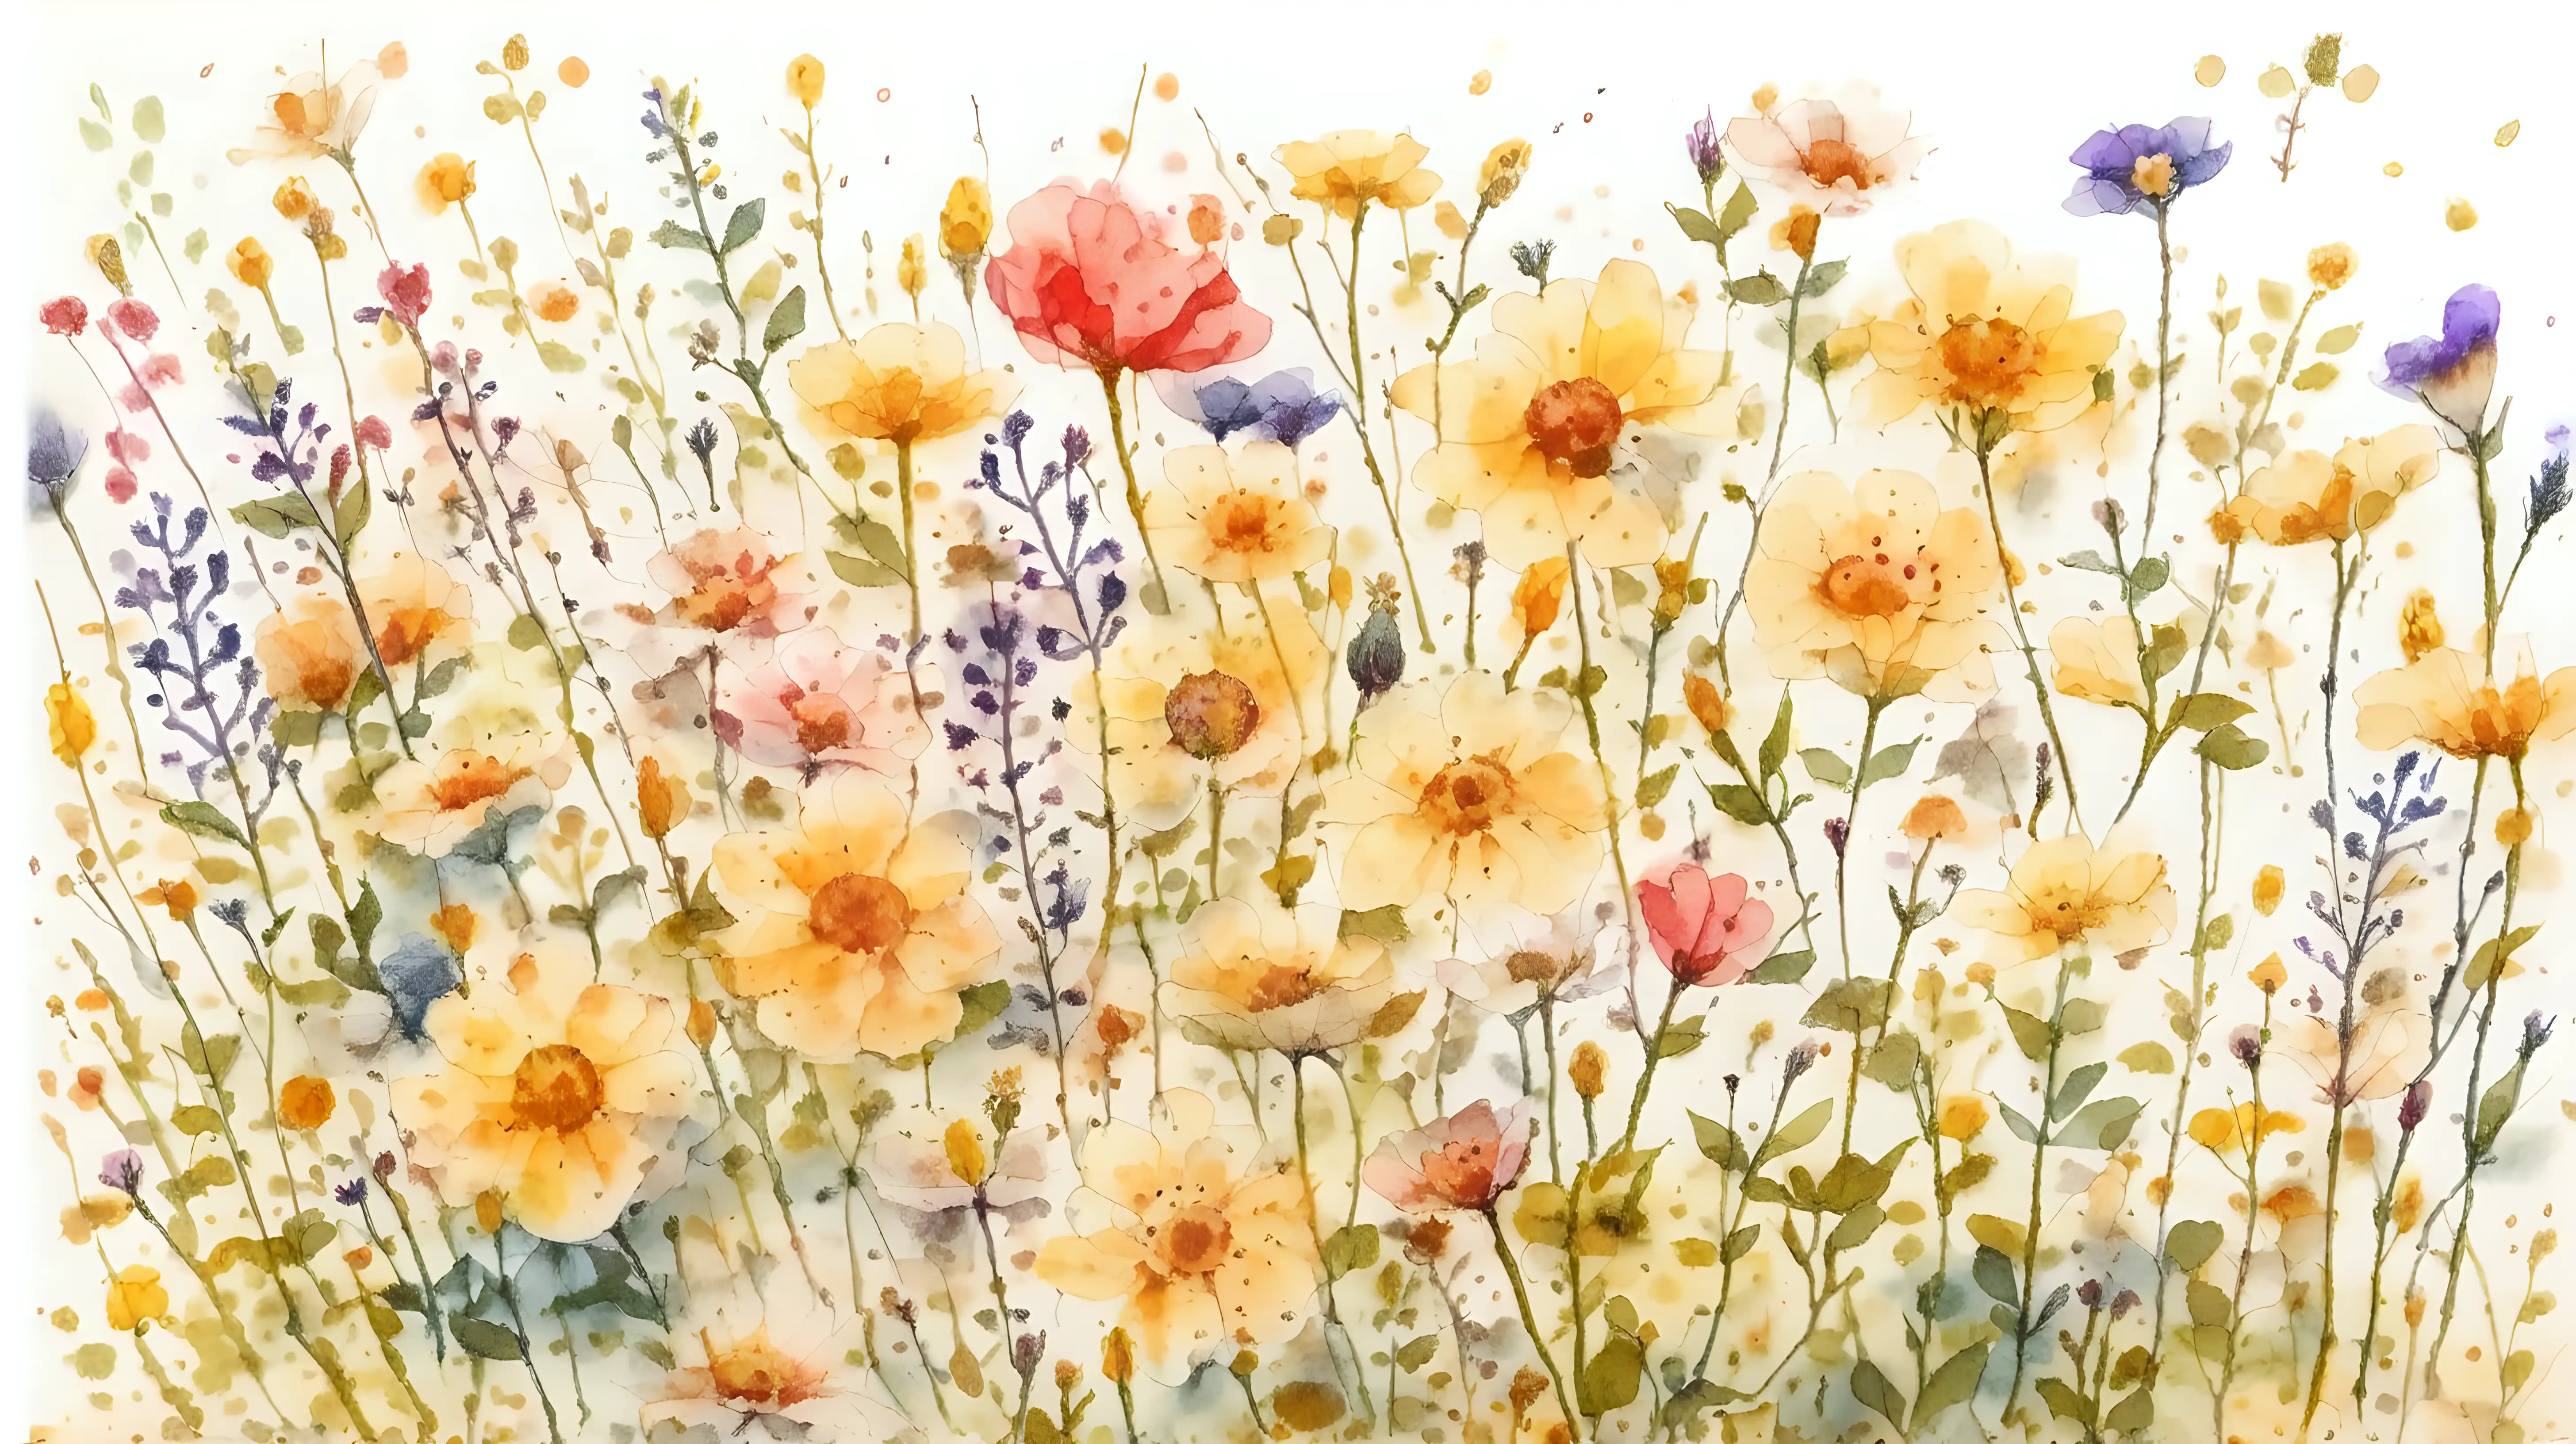 Vintage Watercolor Wildflowers in Bloom